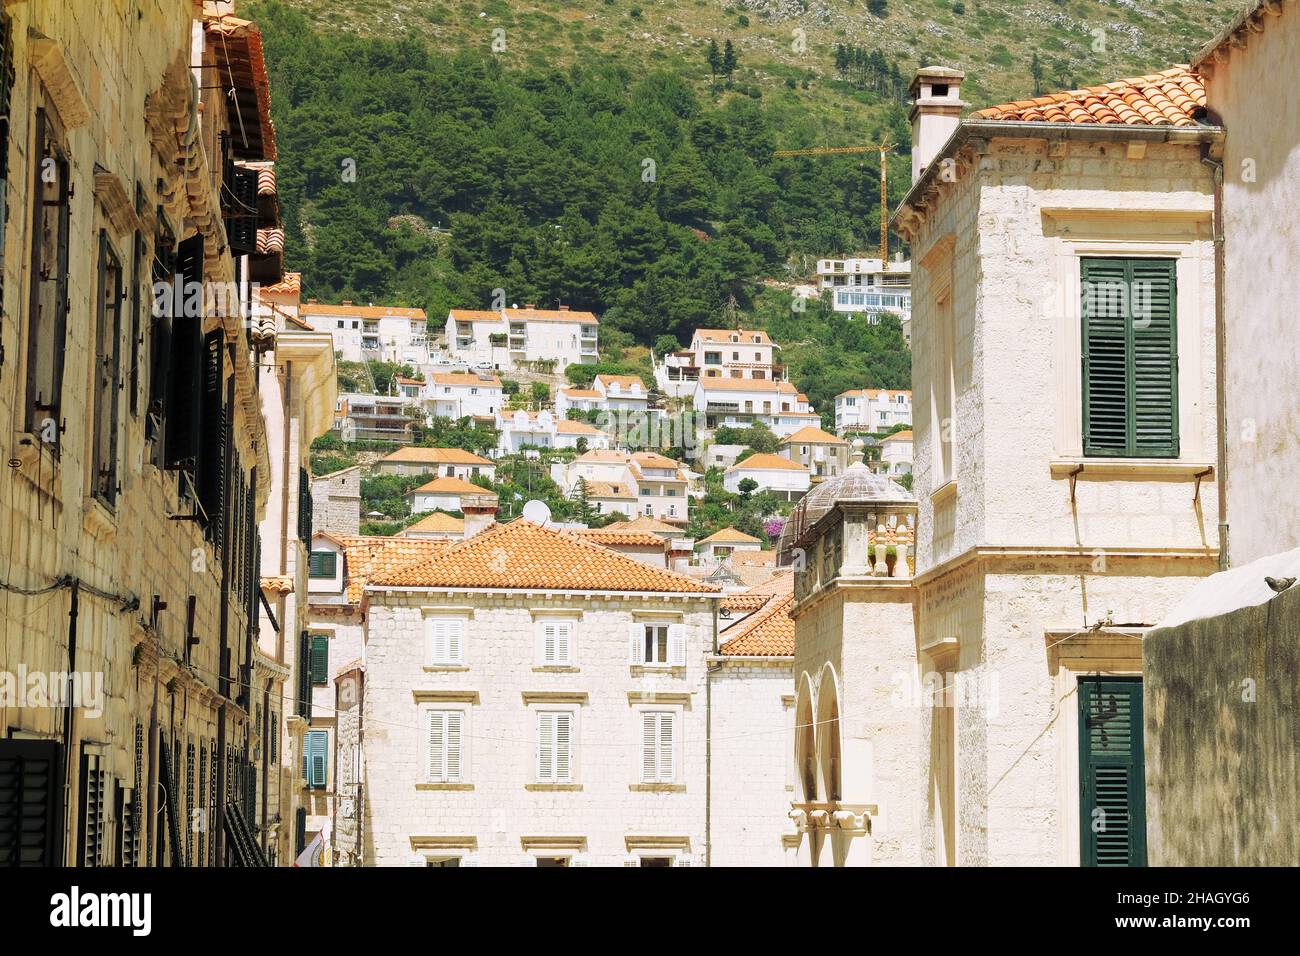 Sommer in Kroatien, Dubrovnik. Durchgang zwischen den Mauern zur Altstadt, dem historischen Teil der Stadt. Zwischen den Wänden der Häuser, Blick auf die Dächer. Stockfoto